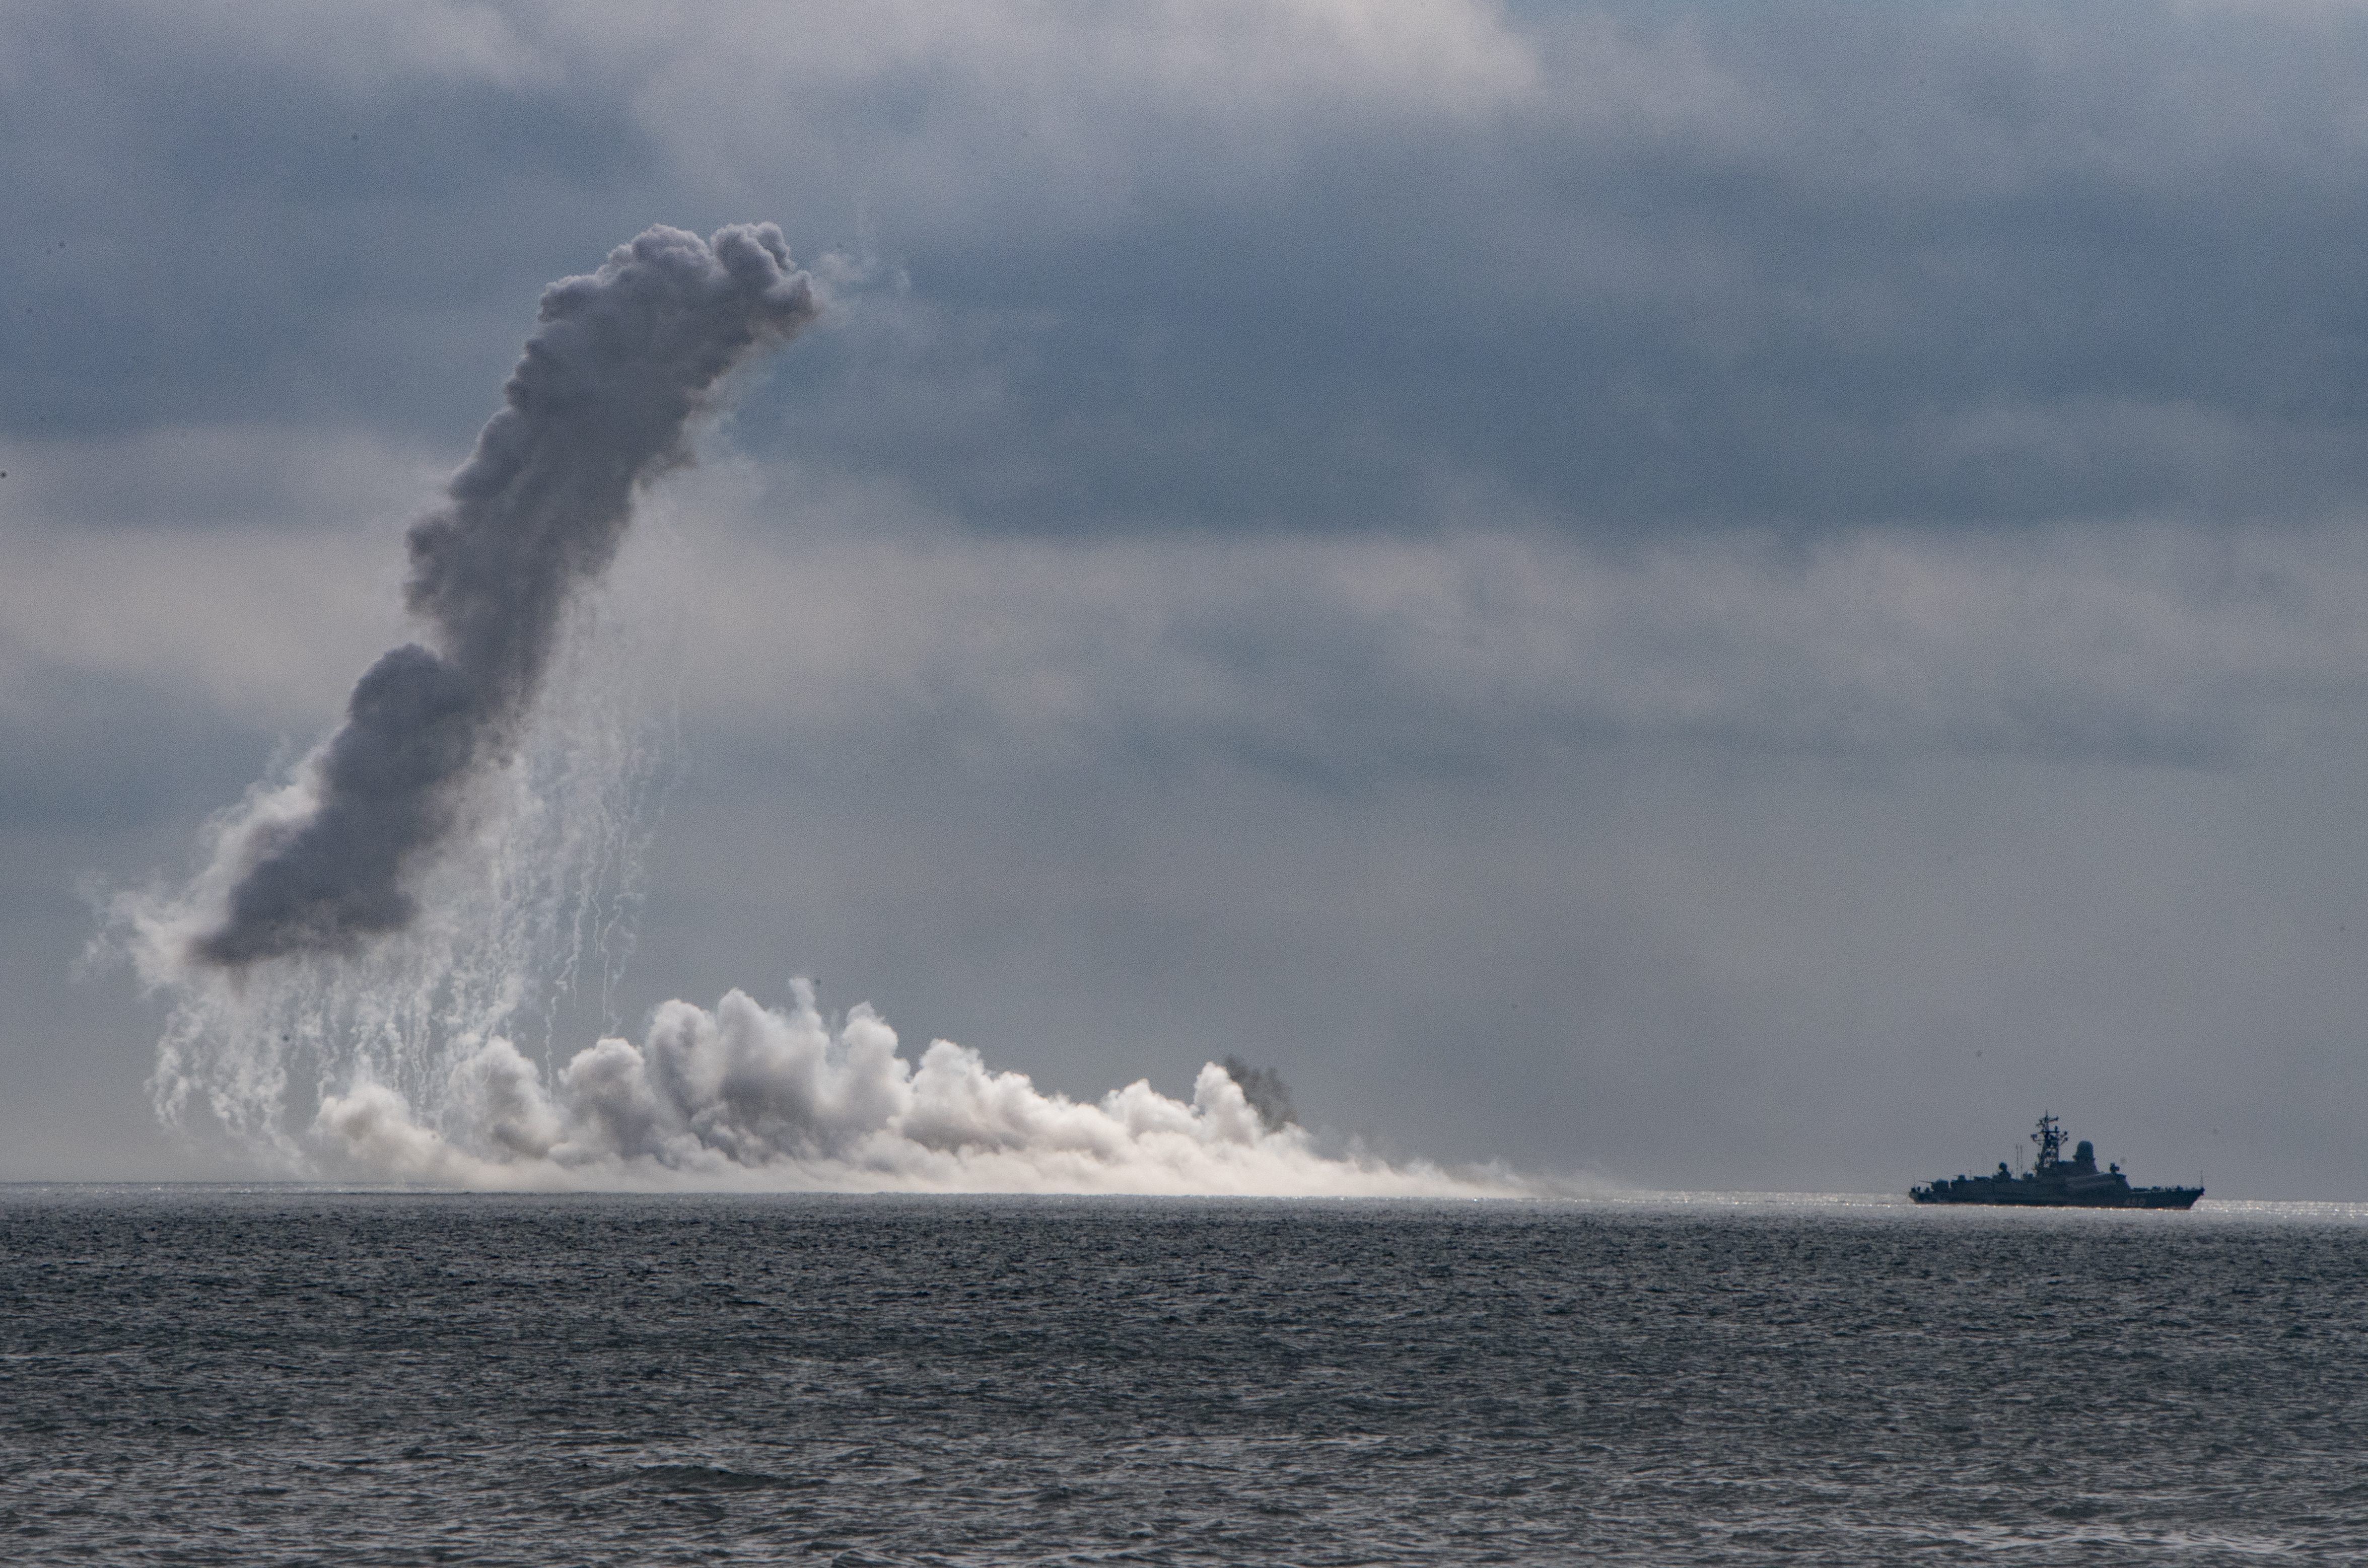 Írország nem örül, hogy az orosz haditengerészet a partjai közelében tartana lőgyakorlatot